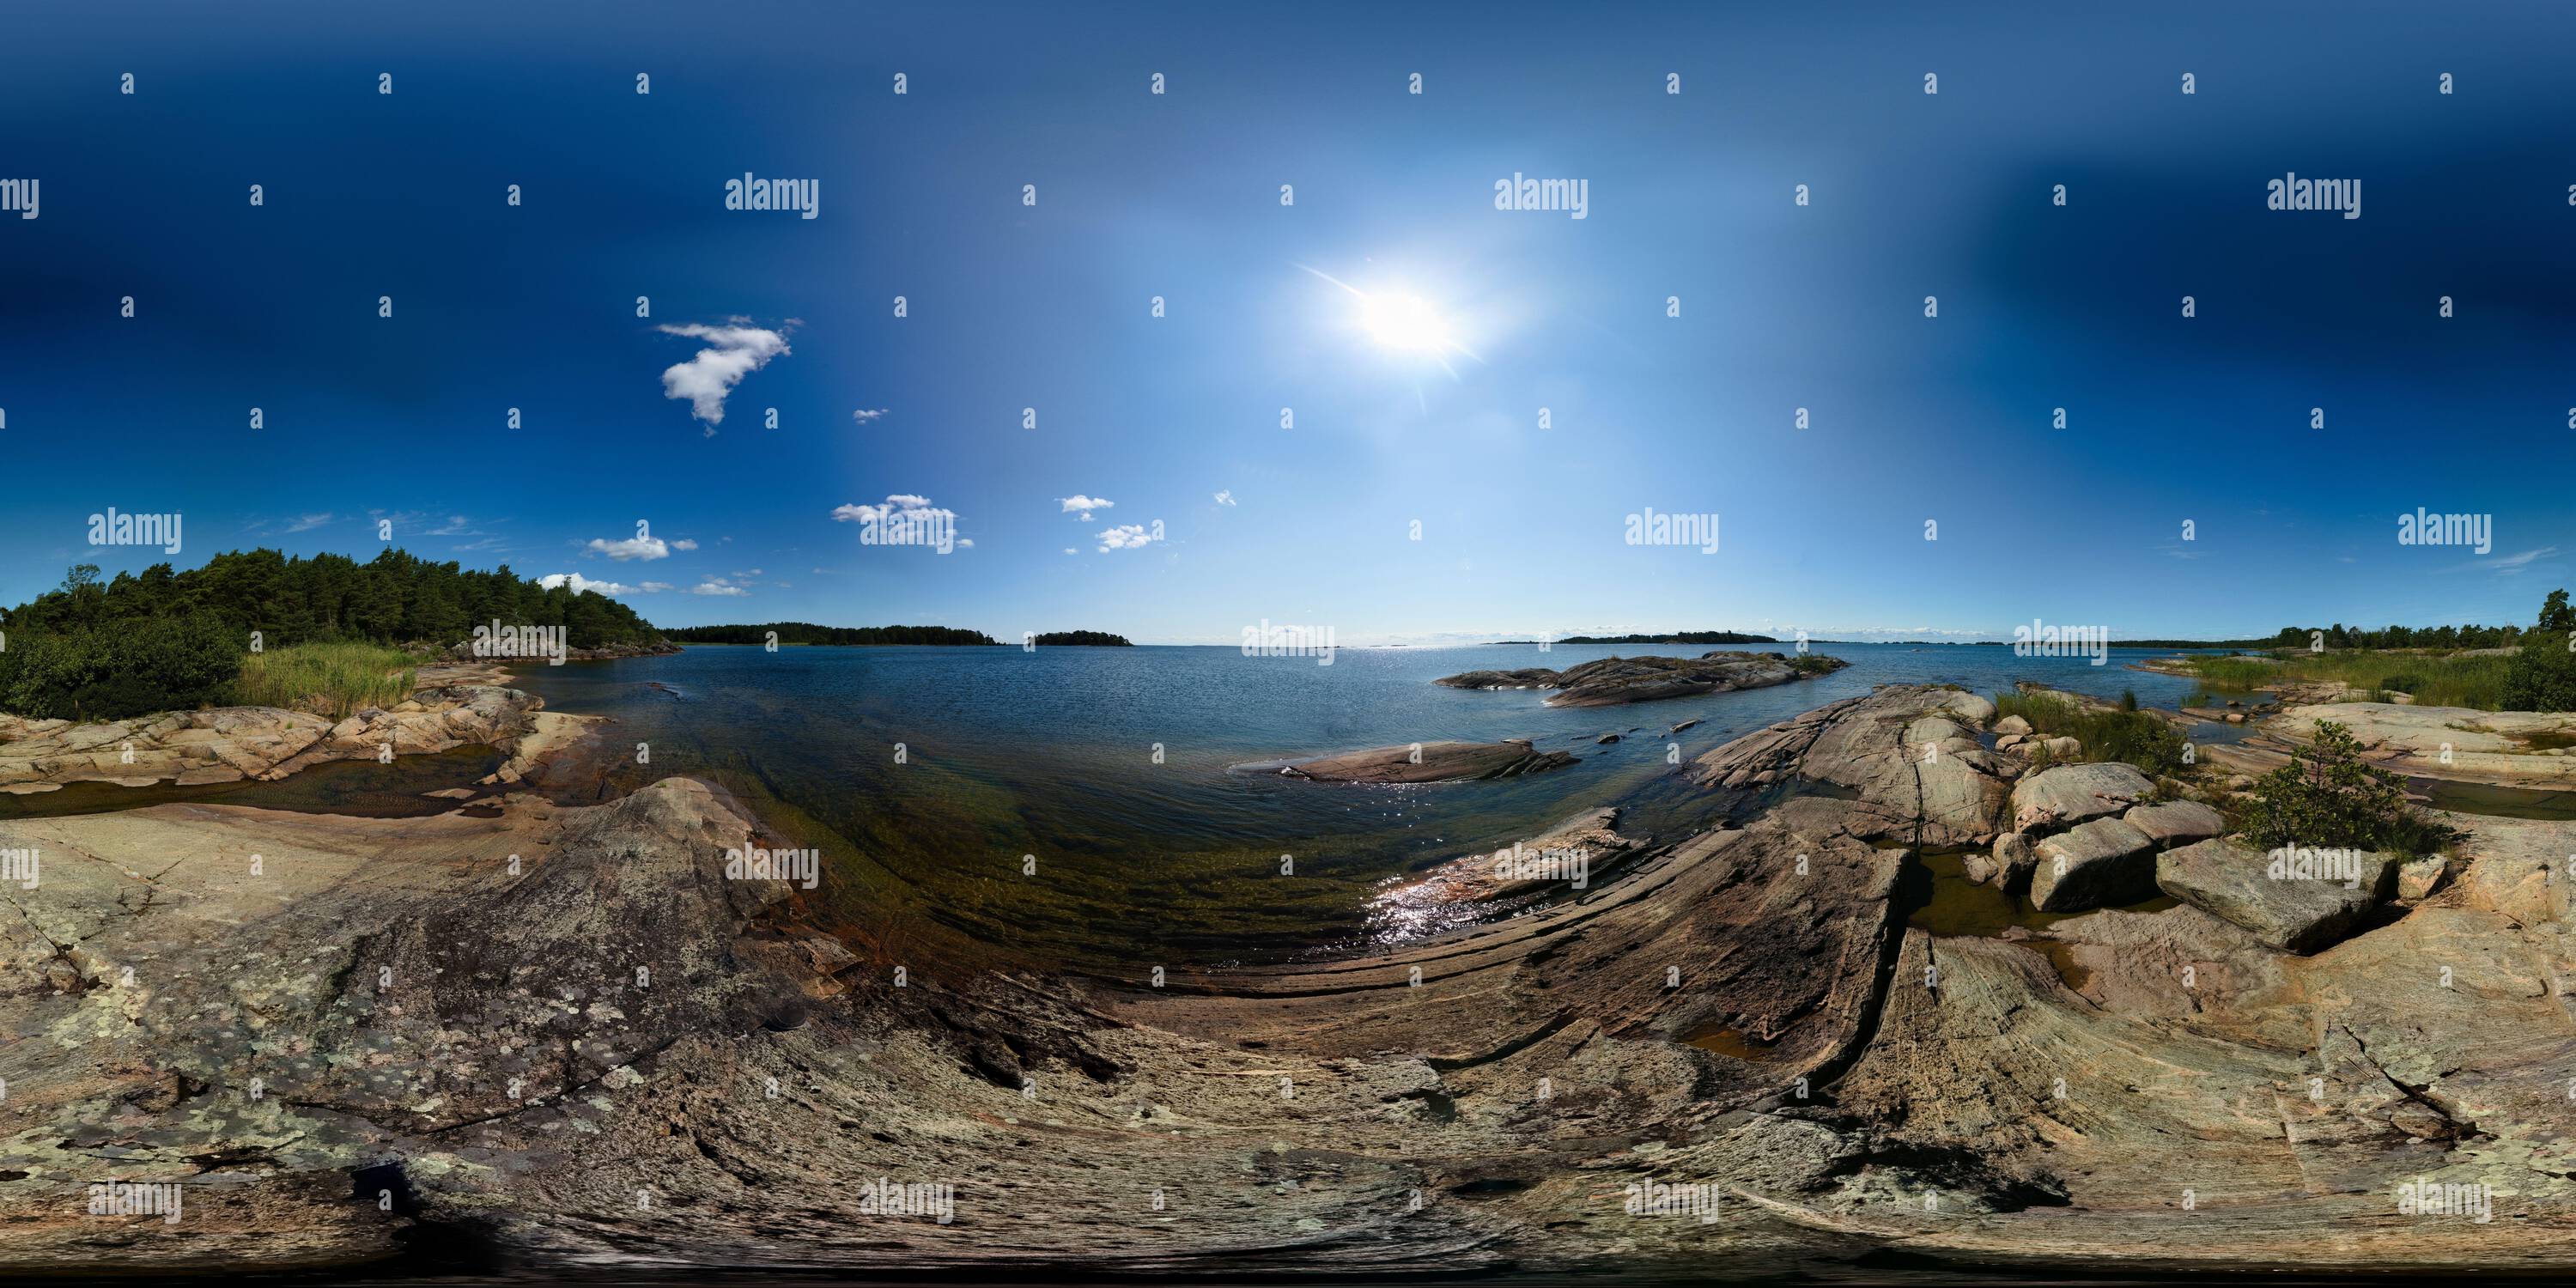 Vue panoramique à 360° de Panorama sphérique du lac de Vanern en Suède.La projection équirectangulaire est utilisée, utilisable dans la plupart des visionneuses panoramiques.